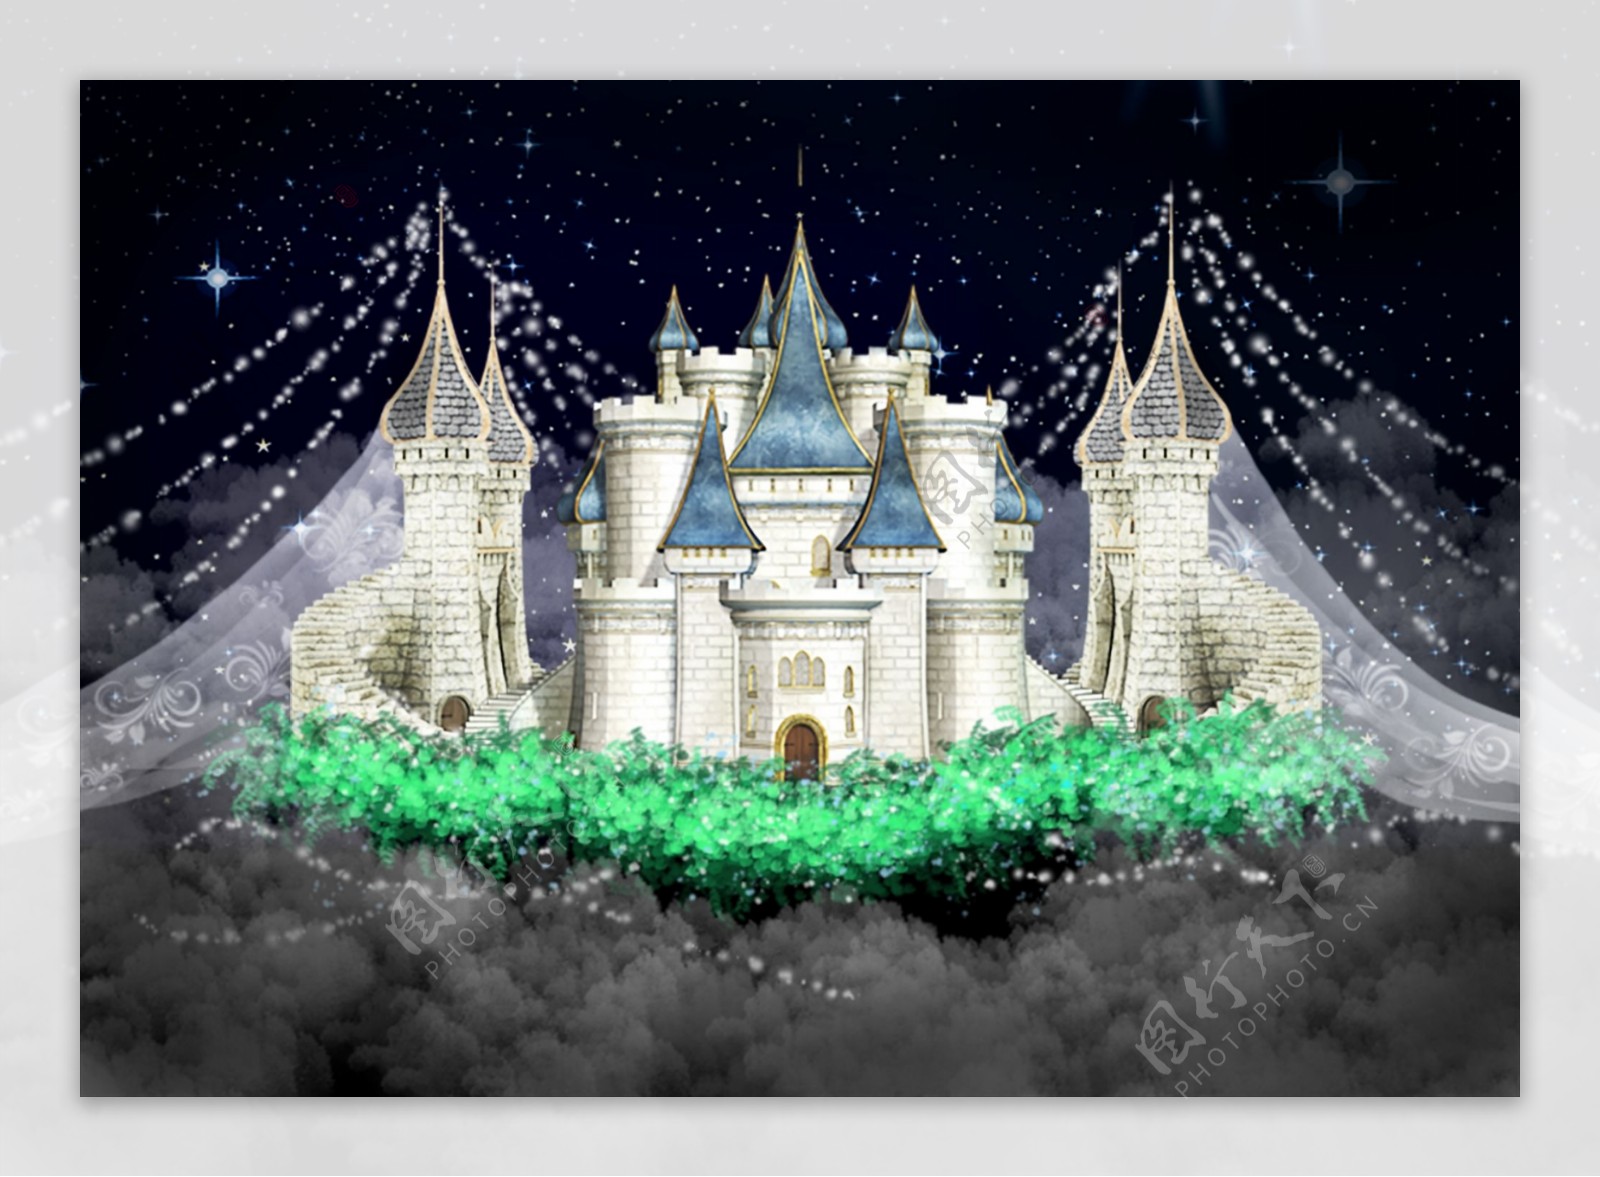 梦幻城堡主题婚礼背景